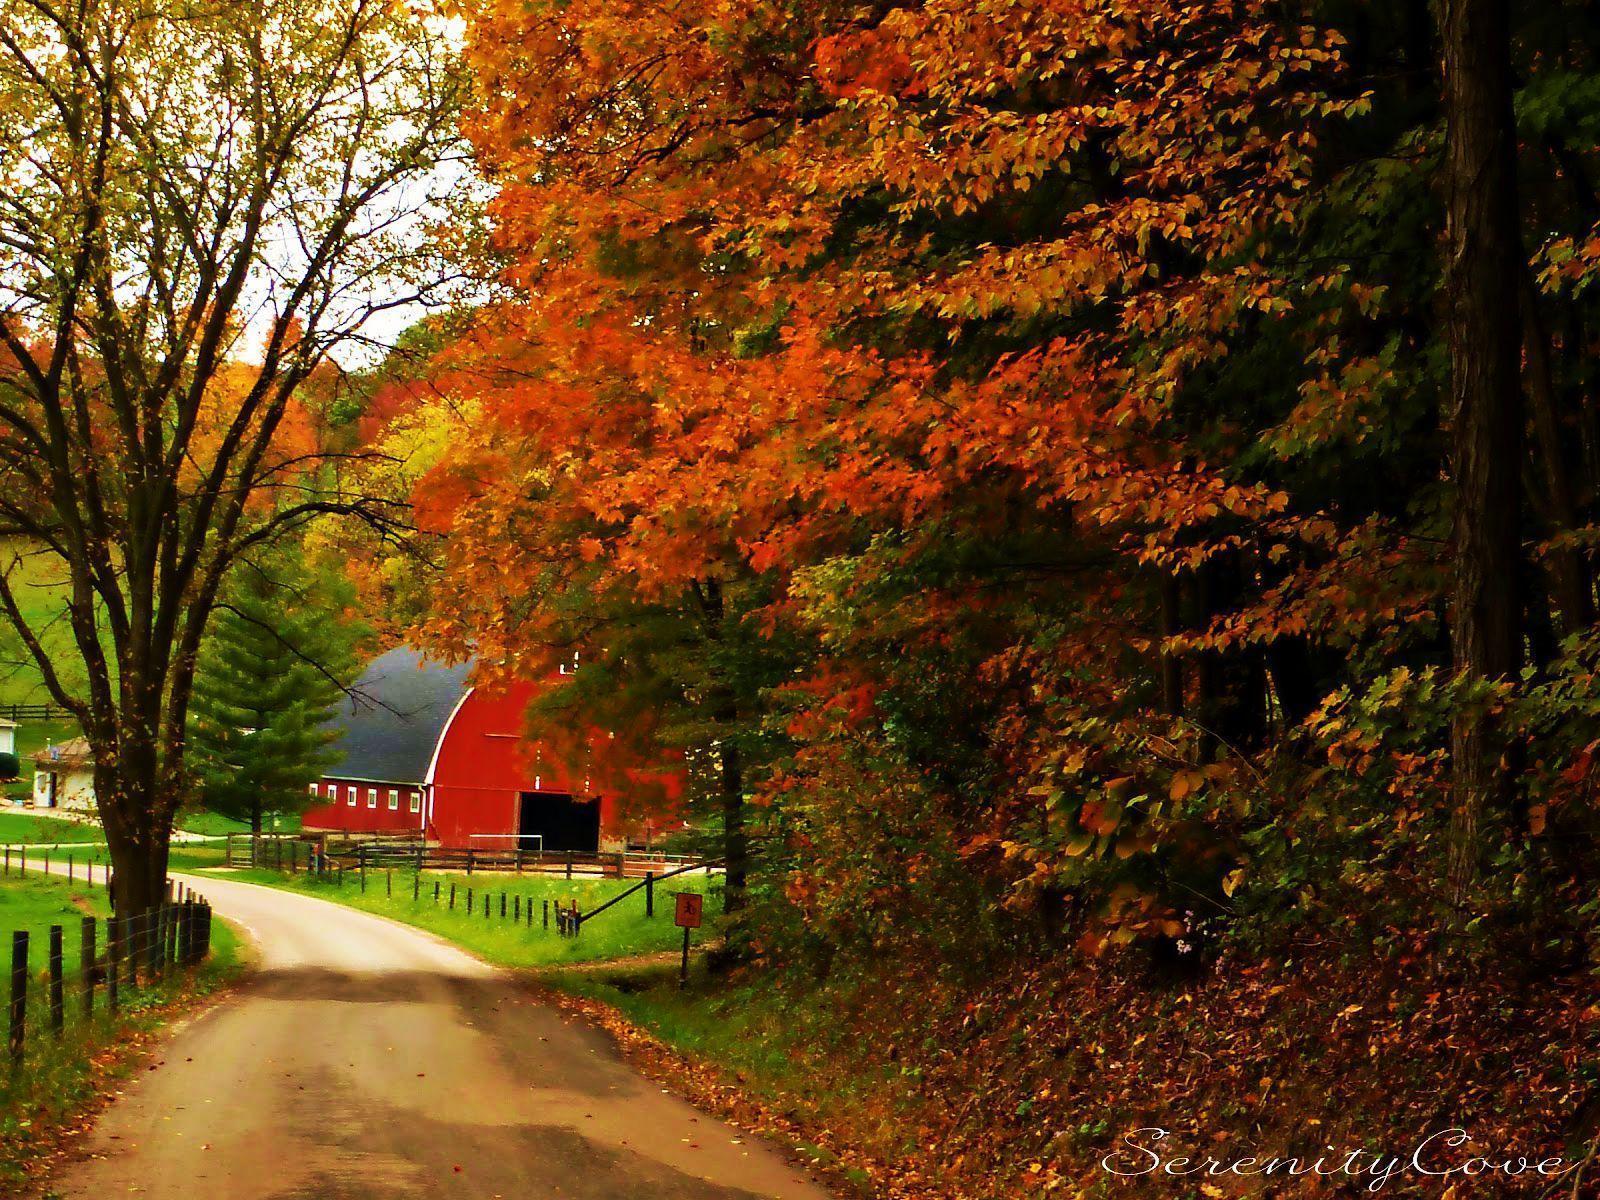 HD Barn in Autumn Landscape Wallpaper. HD Background Wallpaper